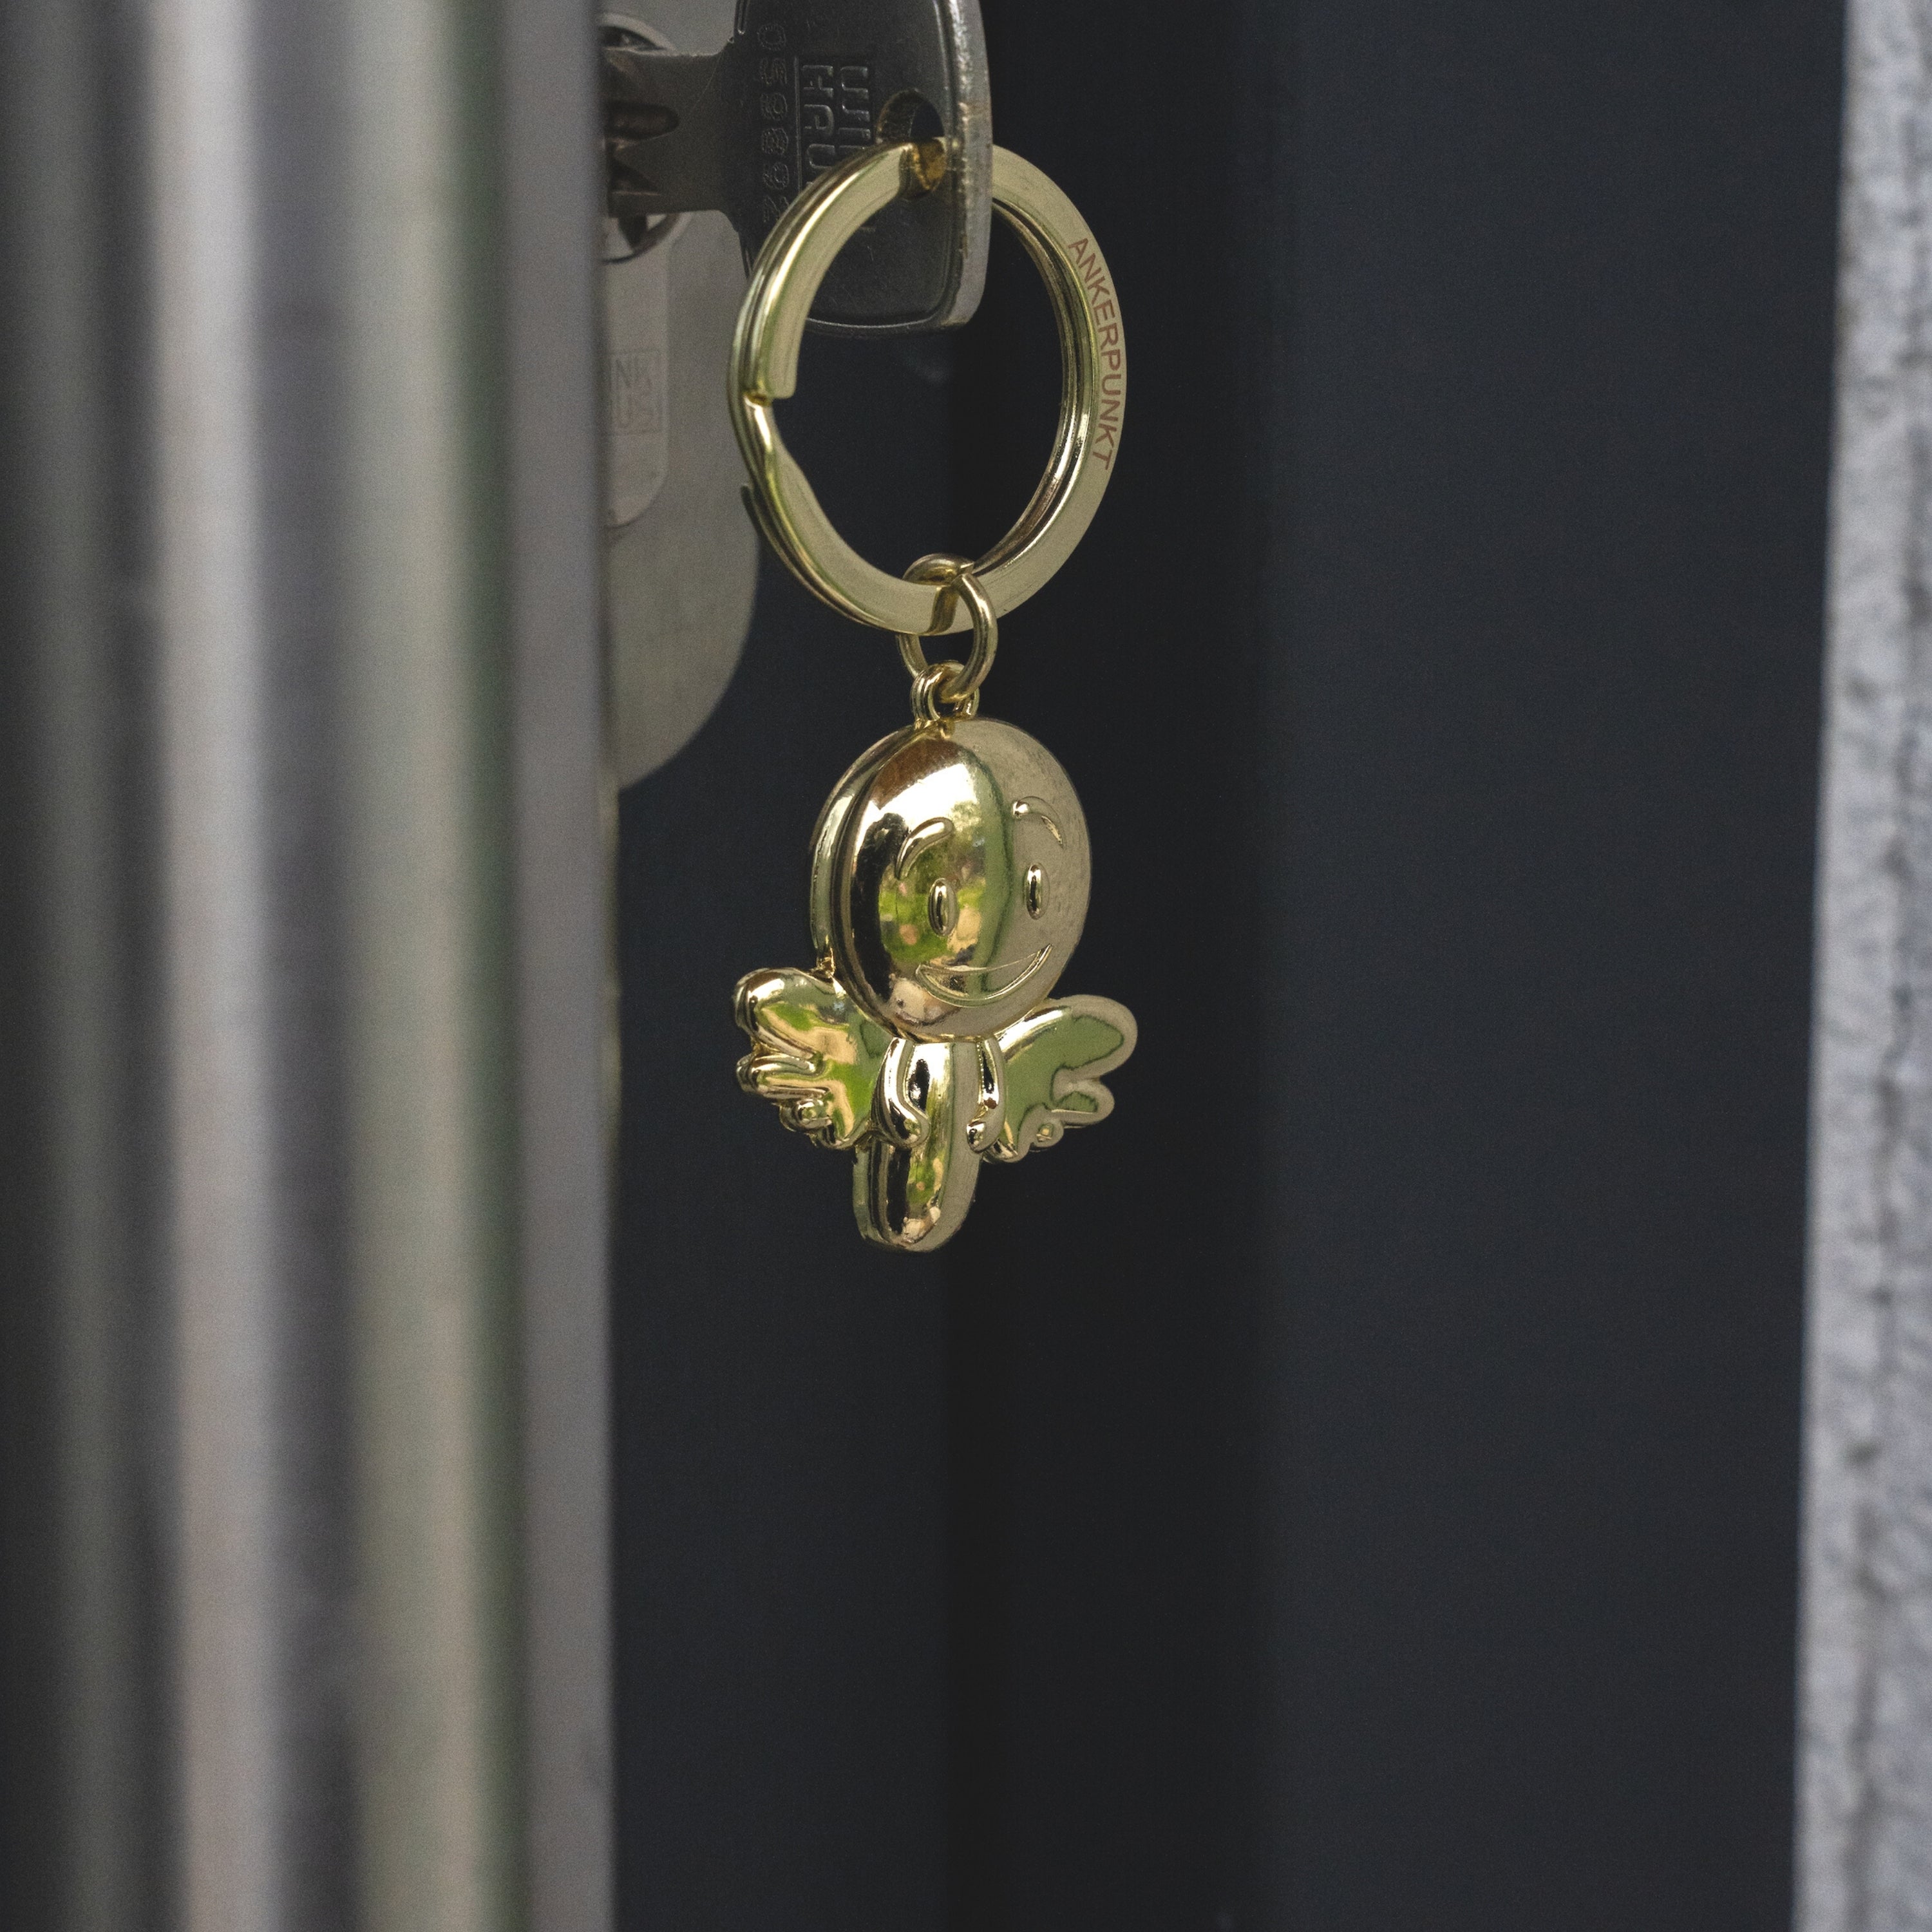 Schlüsselanhänger Engel Smiley gold glänzend in der Tür